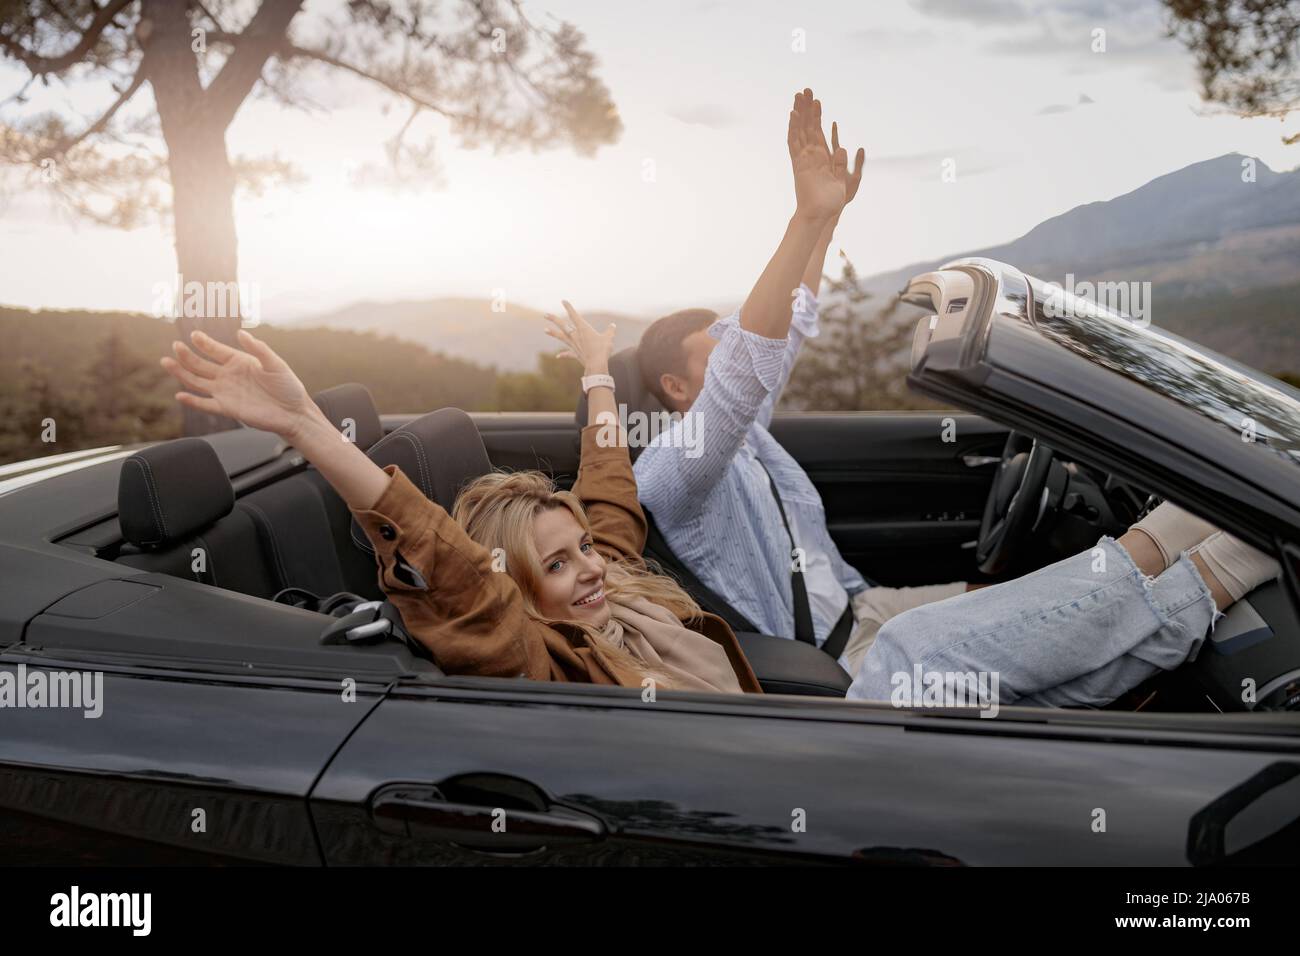 Vue latérale d'un ami joyeux et d'une petite amie assis dans une voiture convertible en montagne Banque D'Images